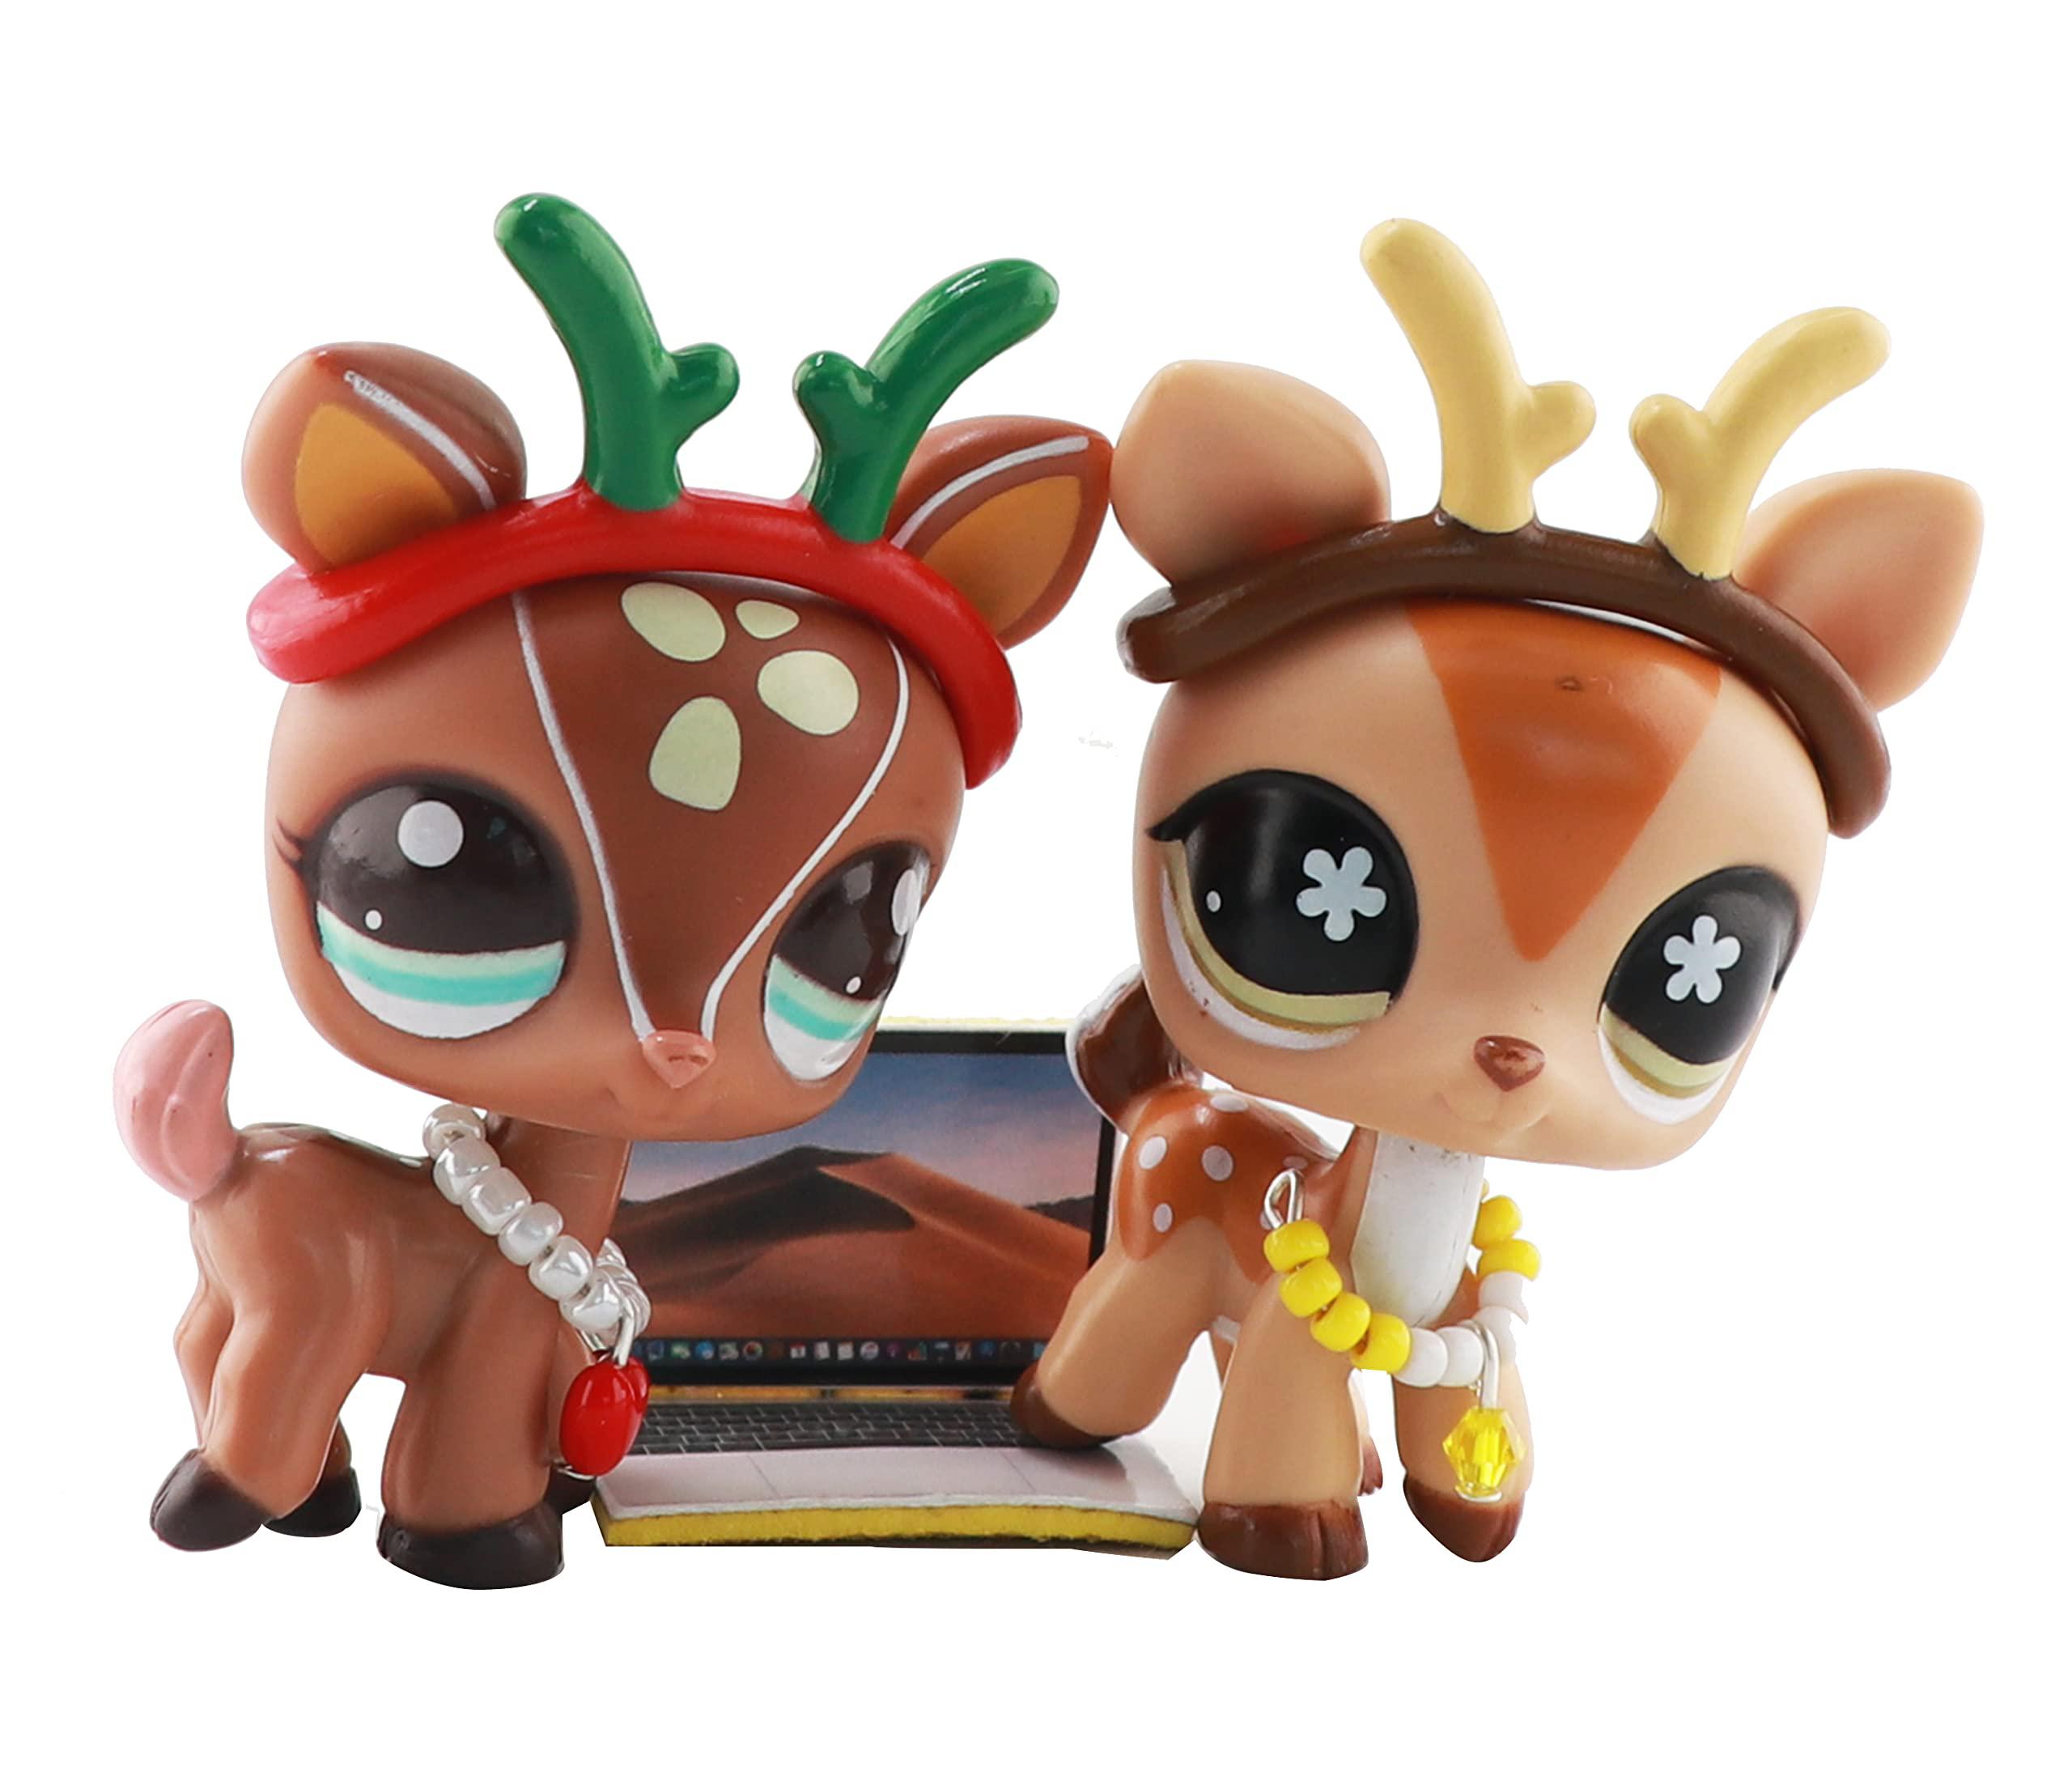 azarua us lps deer sika deer santa deer yellow brown big eyes figure toy  with lps